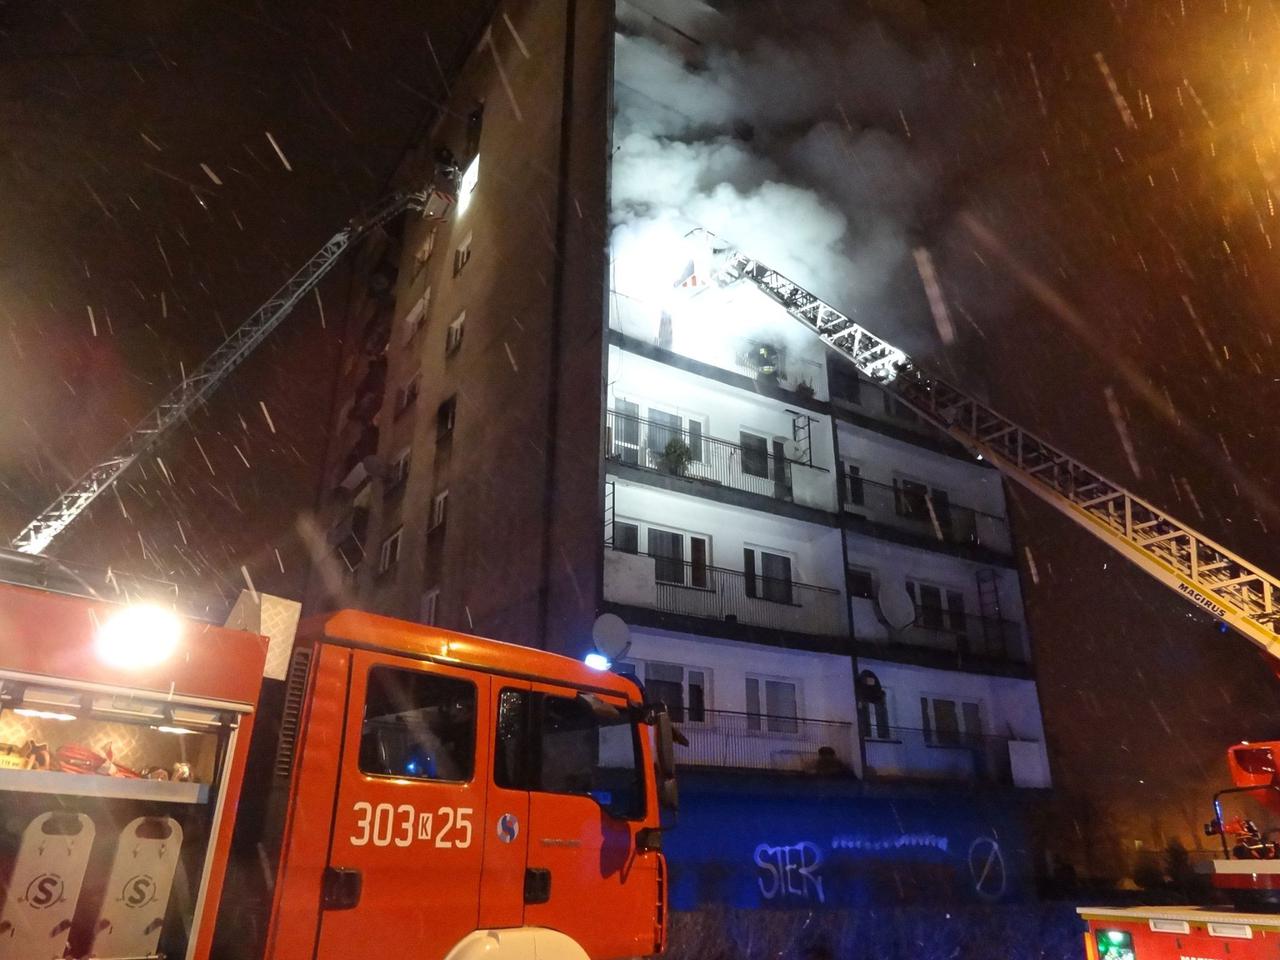 Kraków: Pożar w bloku przy ul. Czarnowiejskiej. Trzy osoby ranne, jedna w ciężkim stanie [GALERIA ZDJĘĆ, AUDIO]